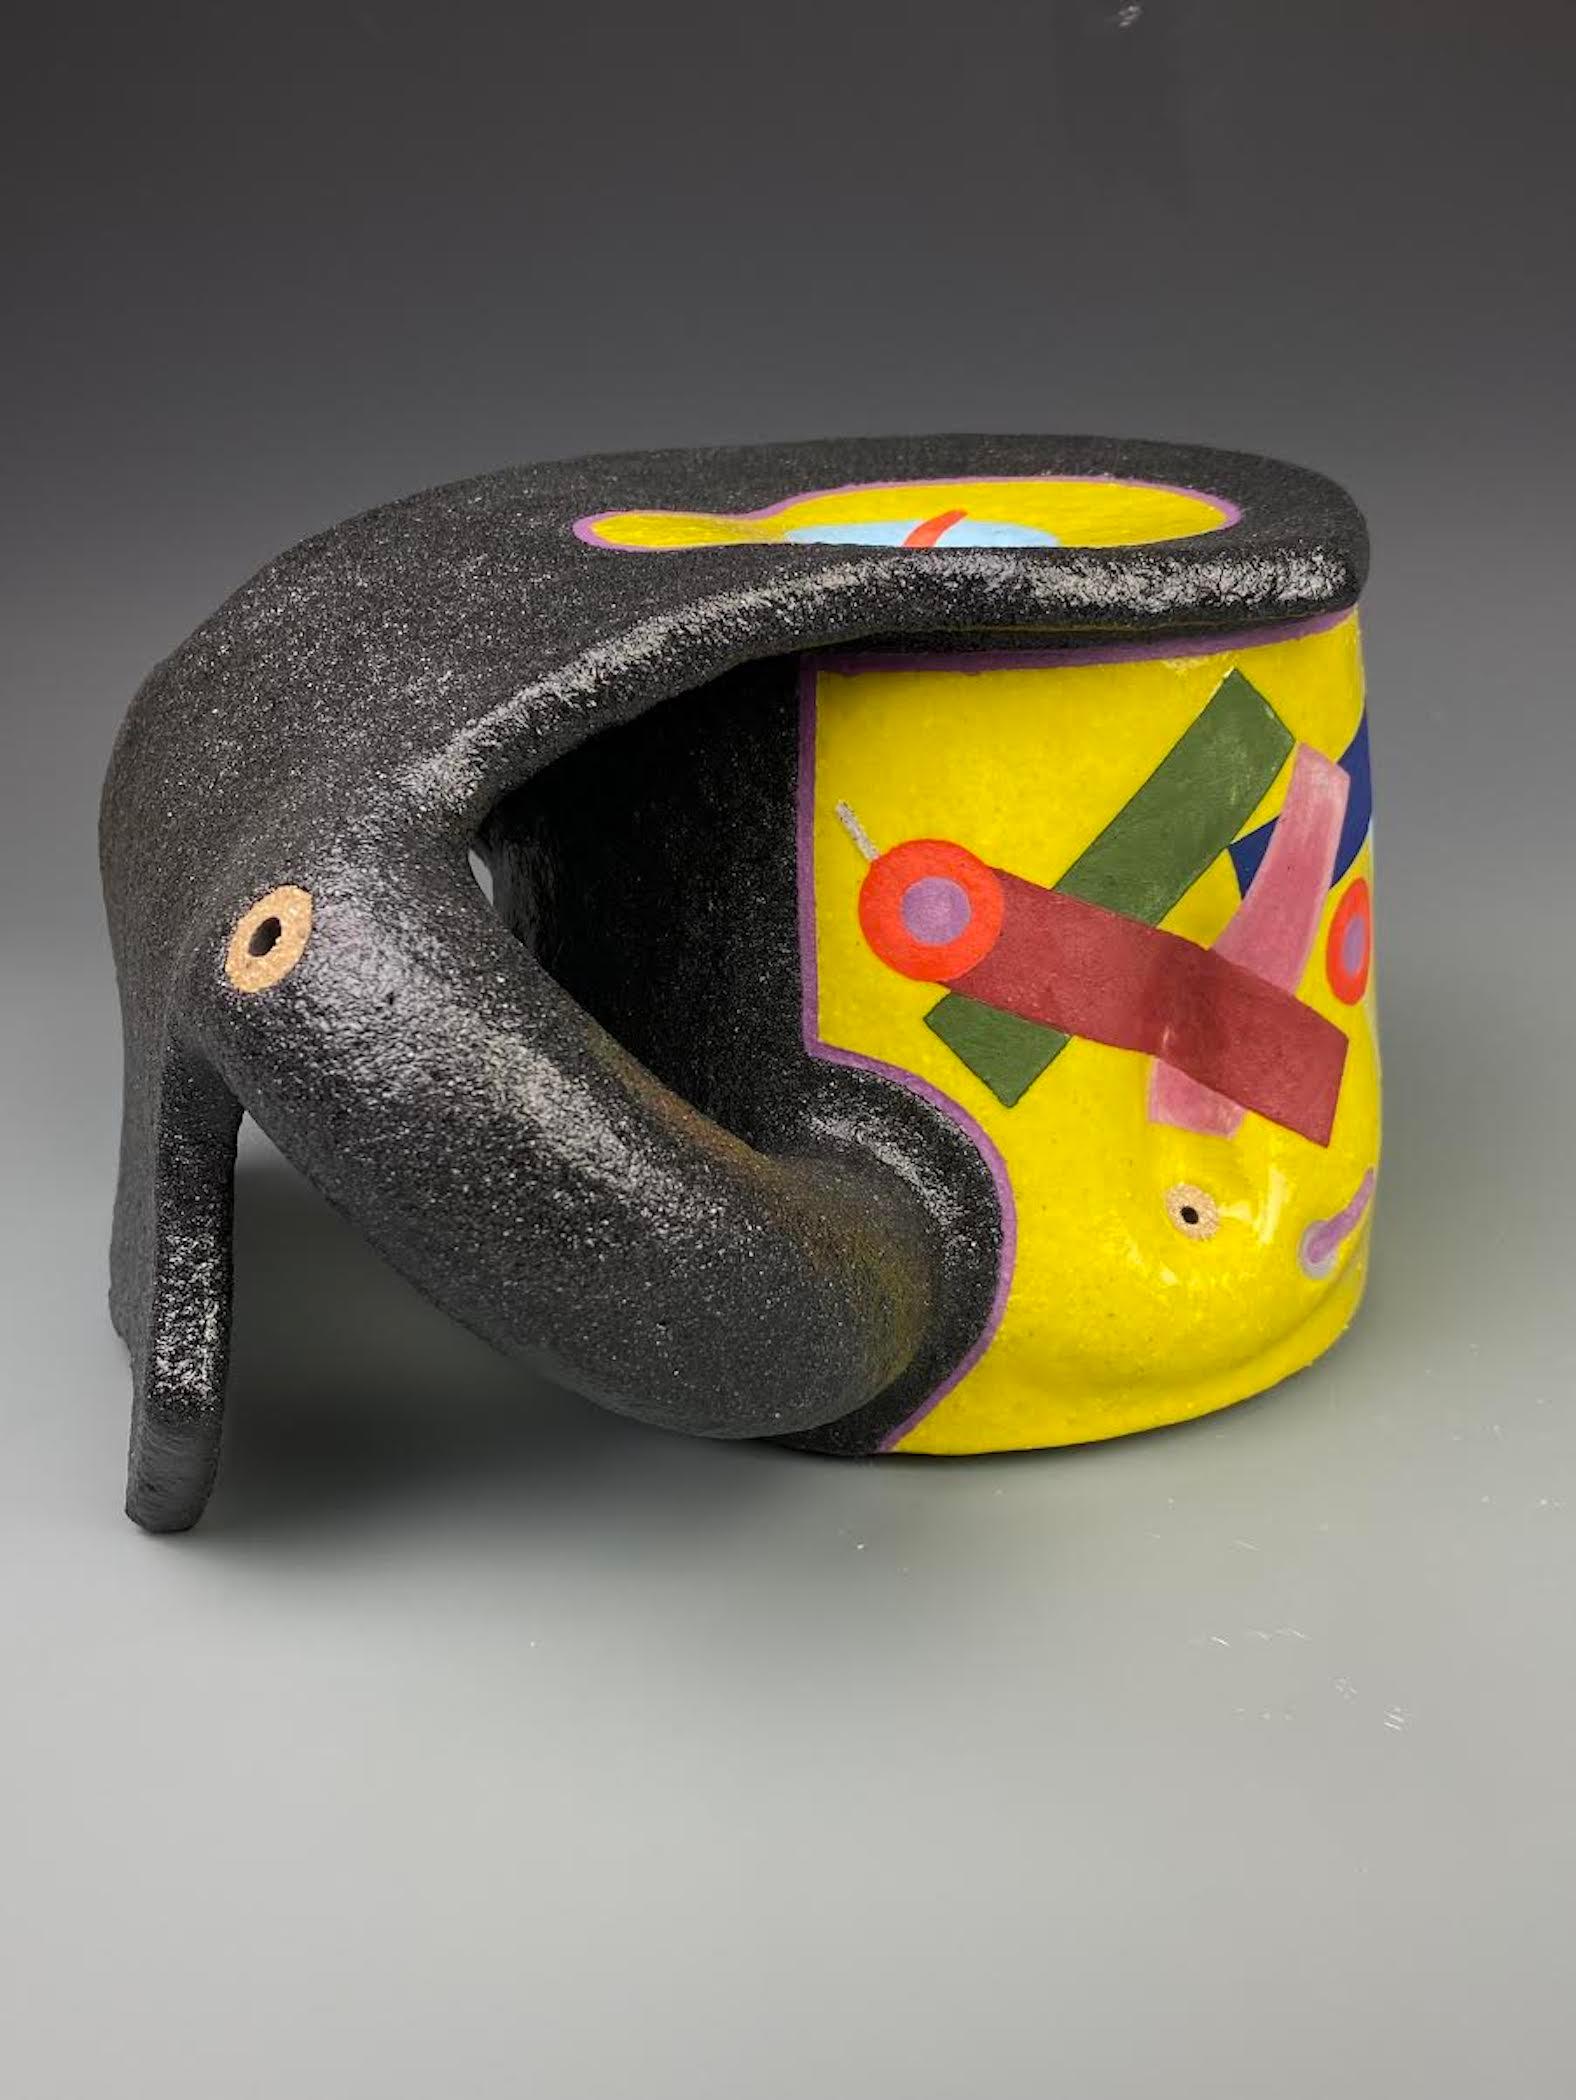 José Sierra  est un artiste autodidacte et céramiste, né à Mérida, au Venezuela, en 1975. Son travail s'inspire de son  ainsi que l'art préhispanique, la poterie d'Asie de l'Est et le design contemporain. Ses œuvres regorgent de couleurs sursaturées